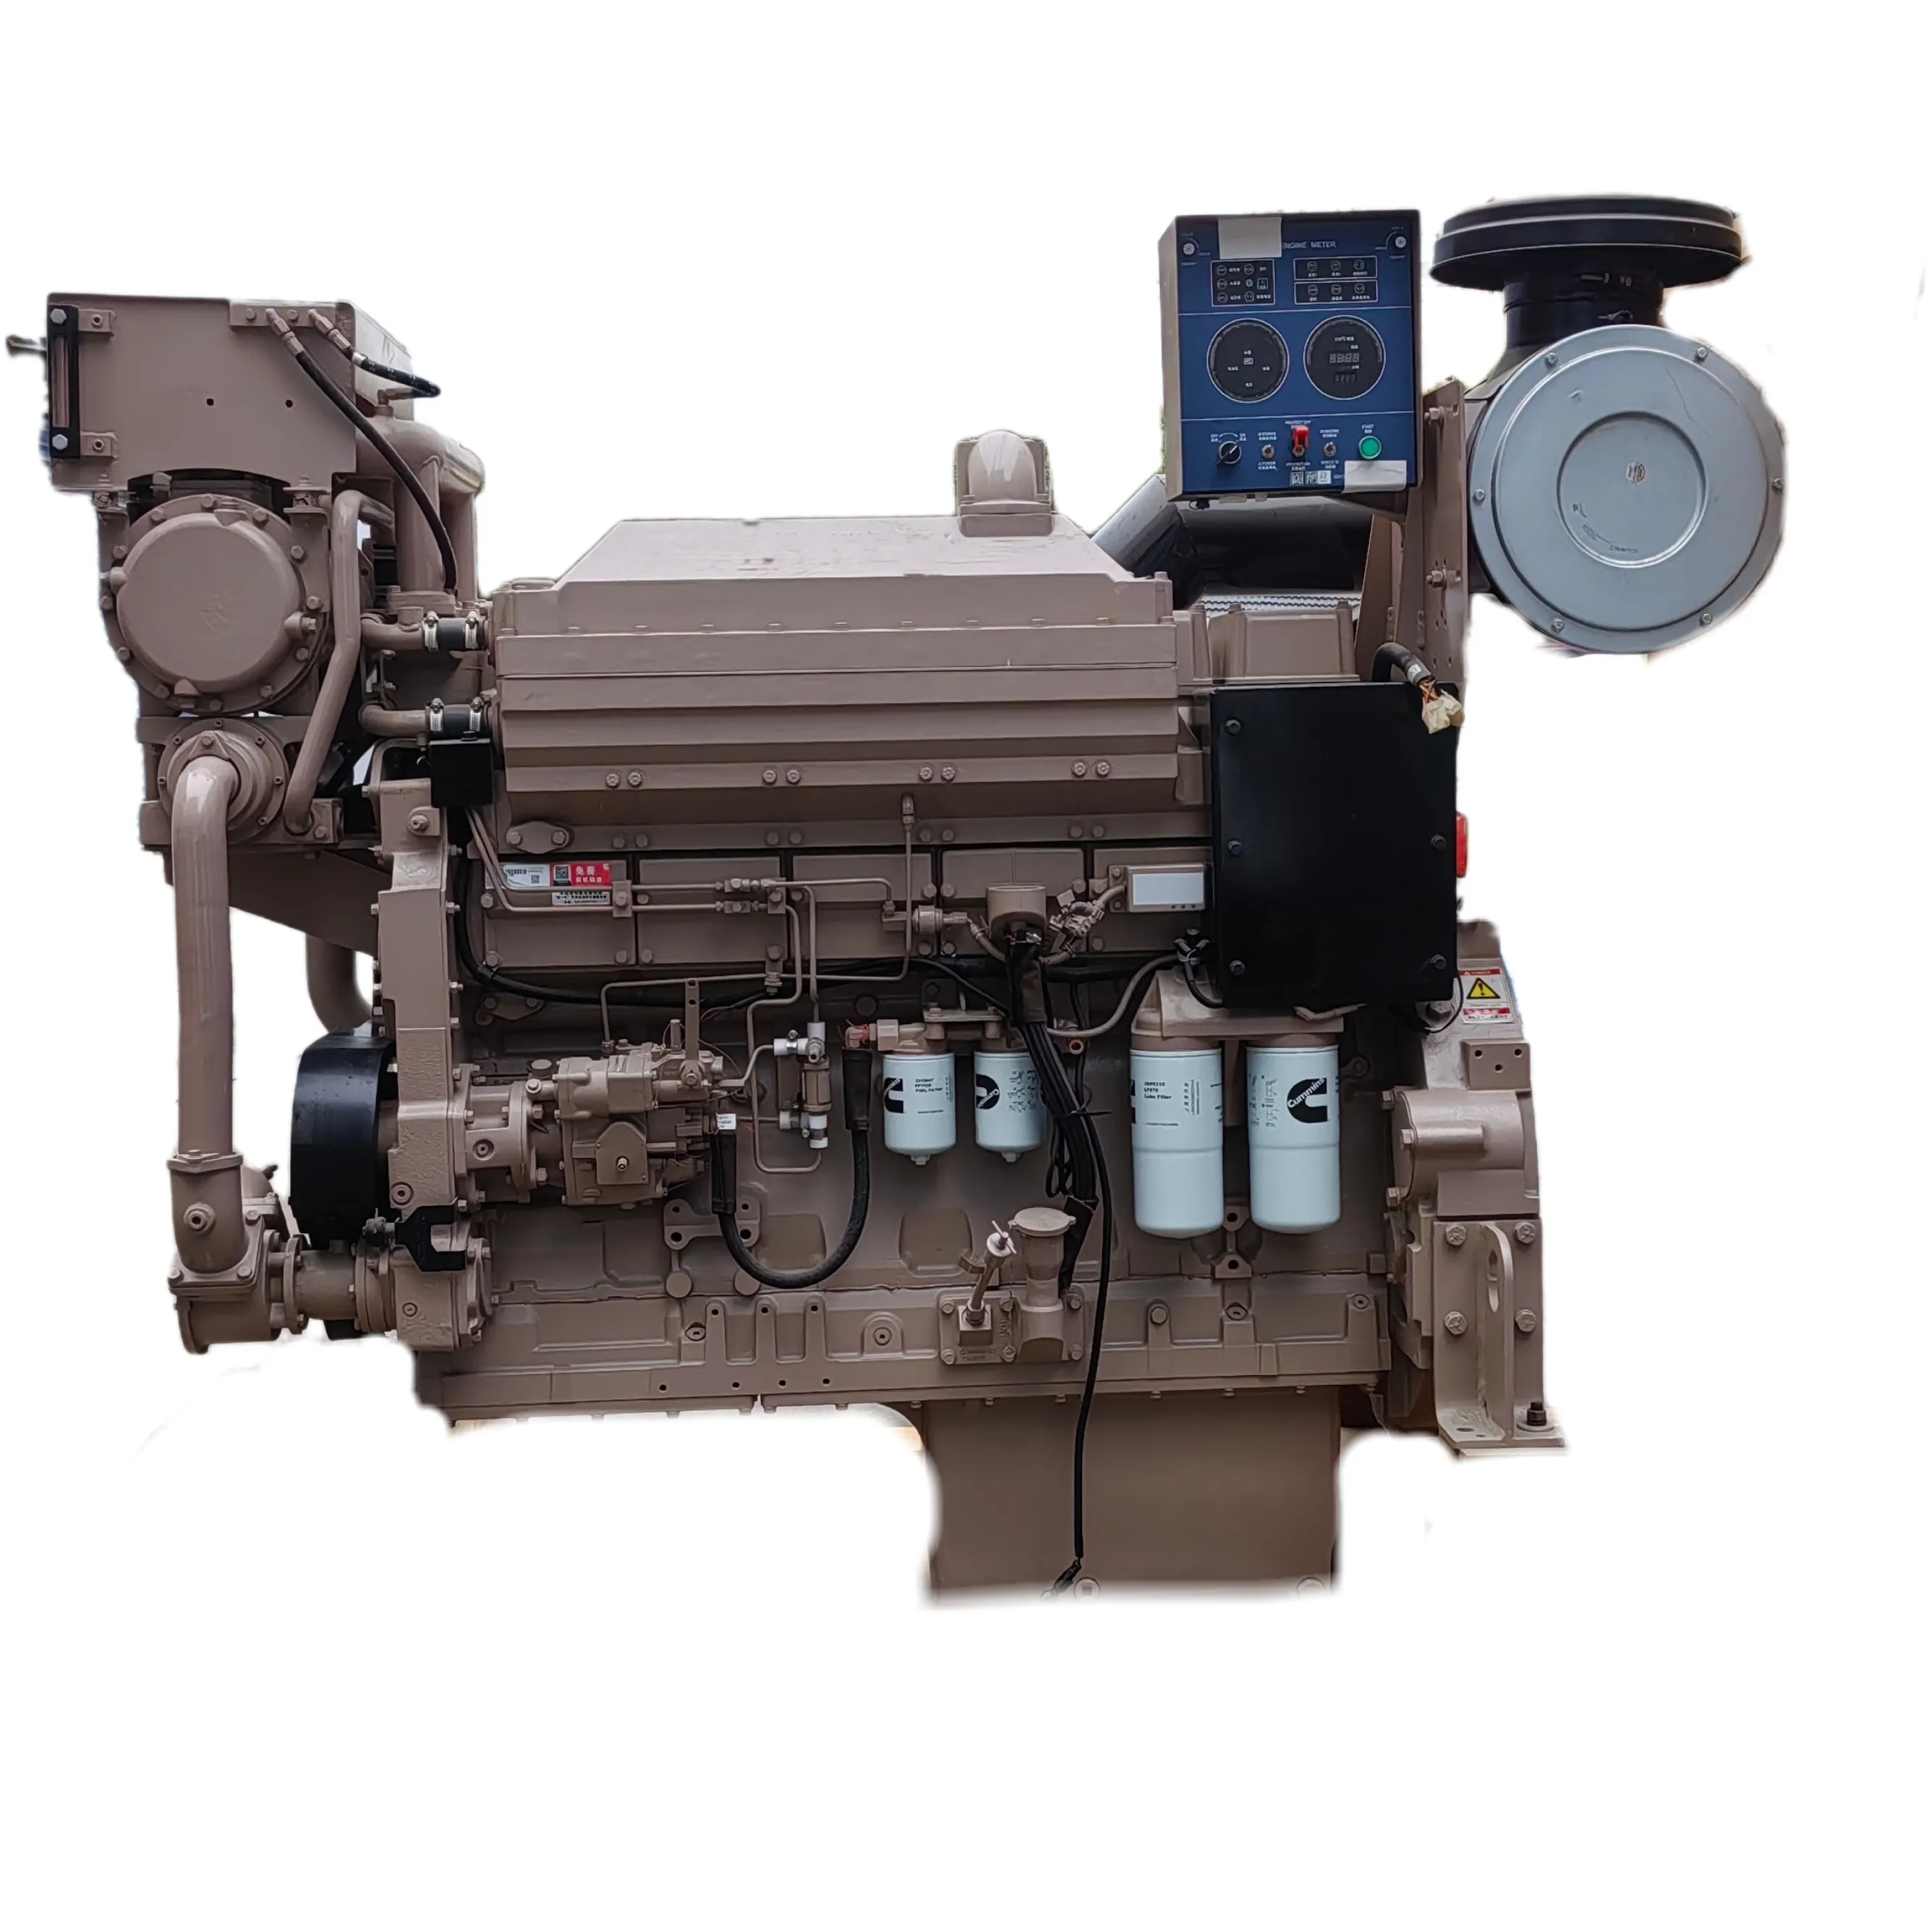 Venda quente 4 tempos 6 cilindros marinhos motores principais K19-M motor diesel